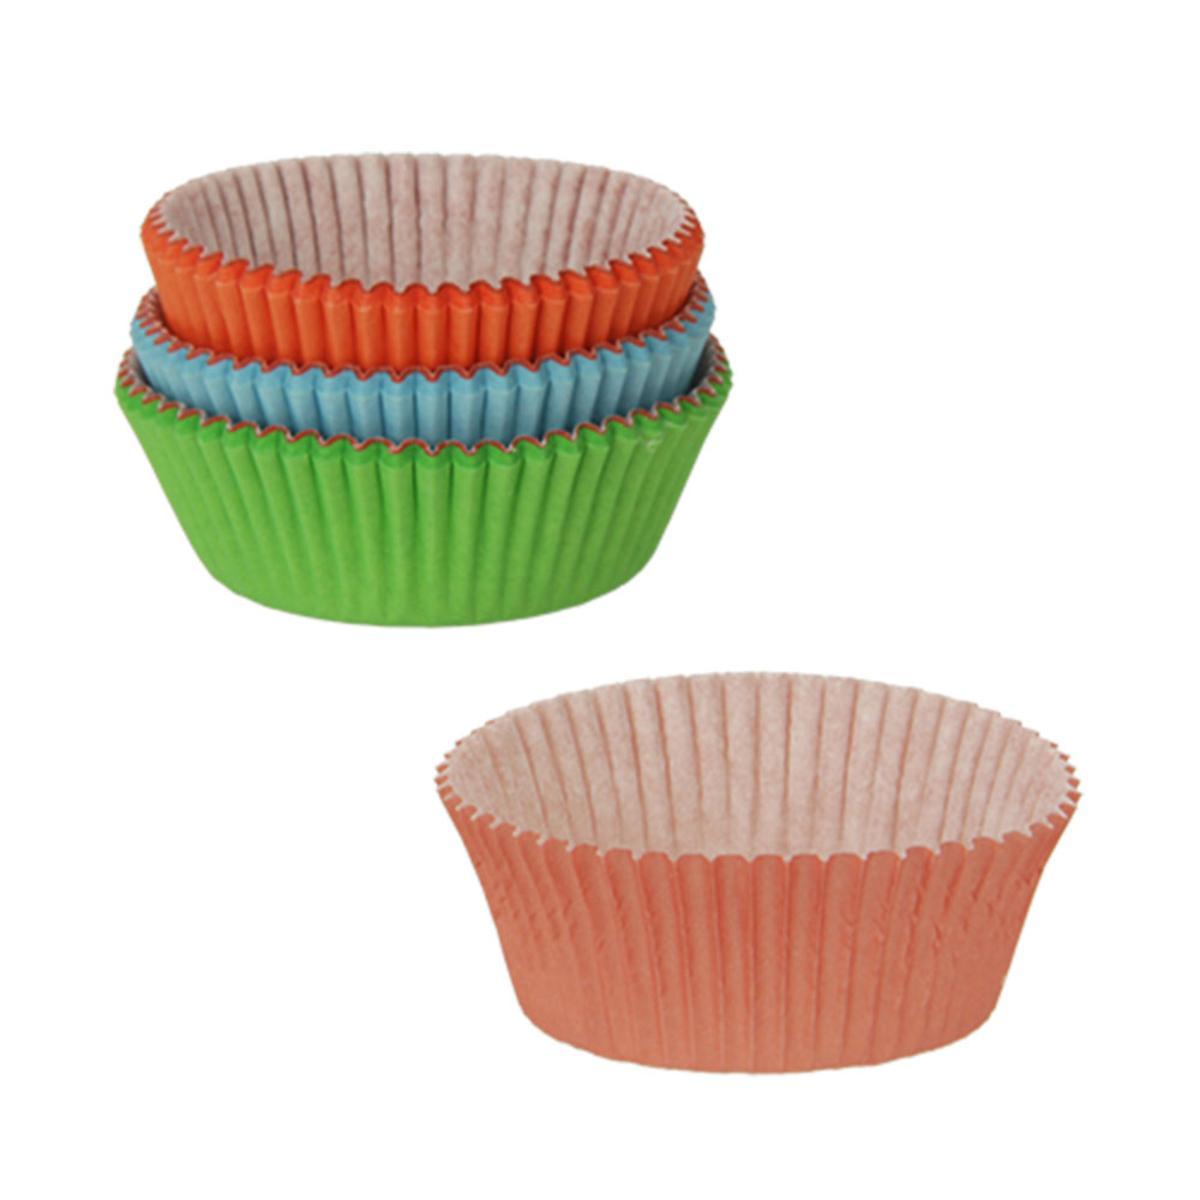 Caissettes Cupcakes Vertes 4,9x3,8x7,5cm (500 Unités)